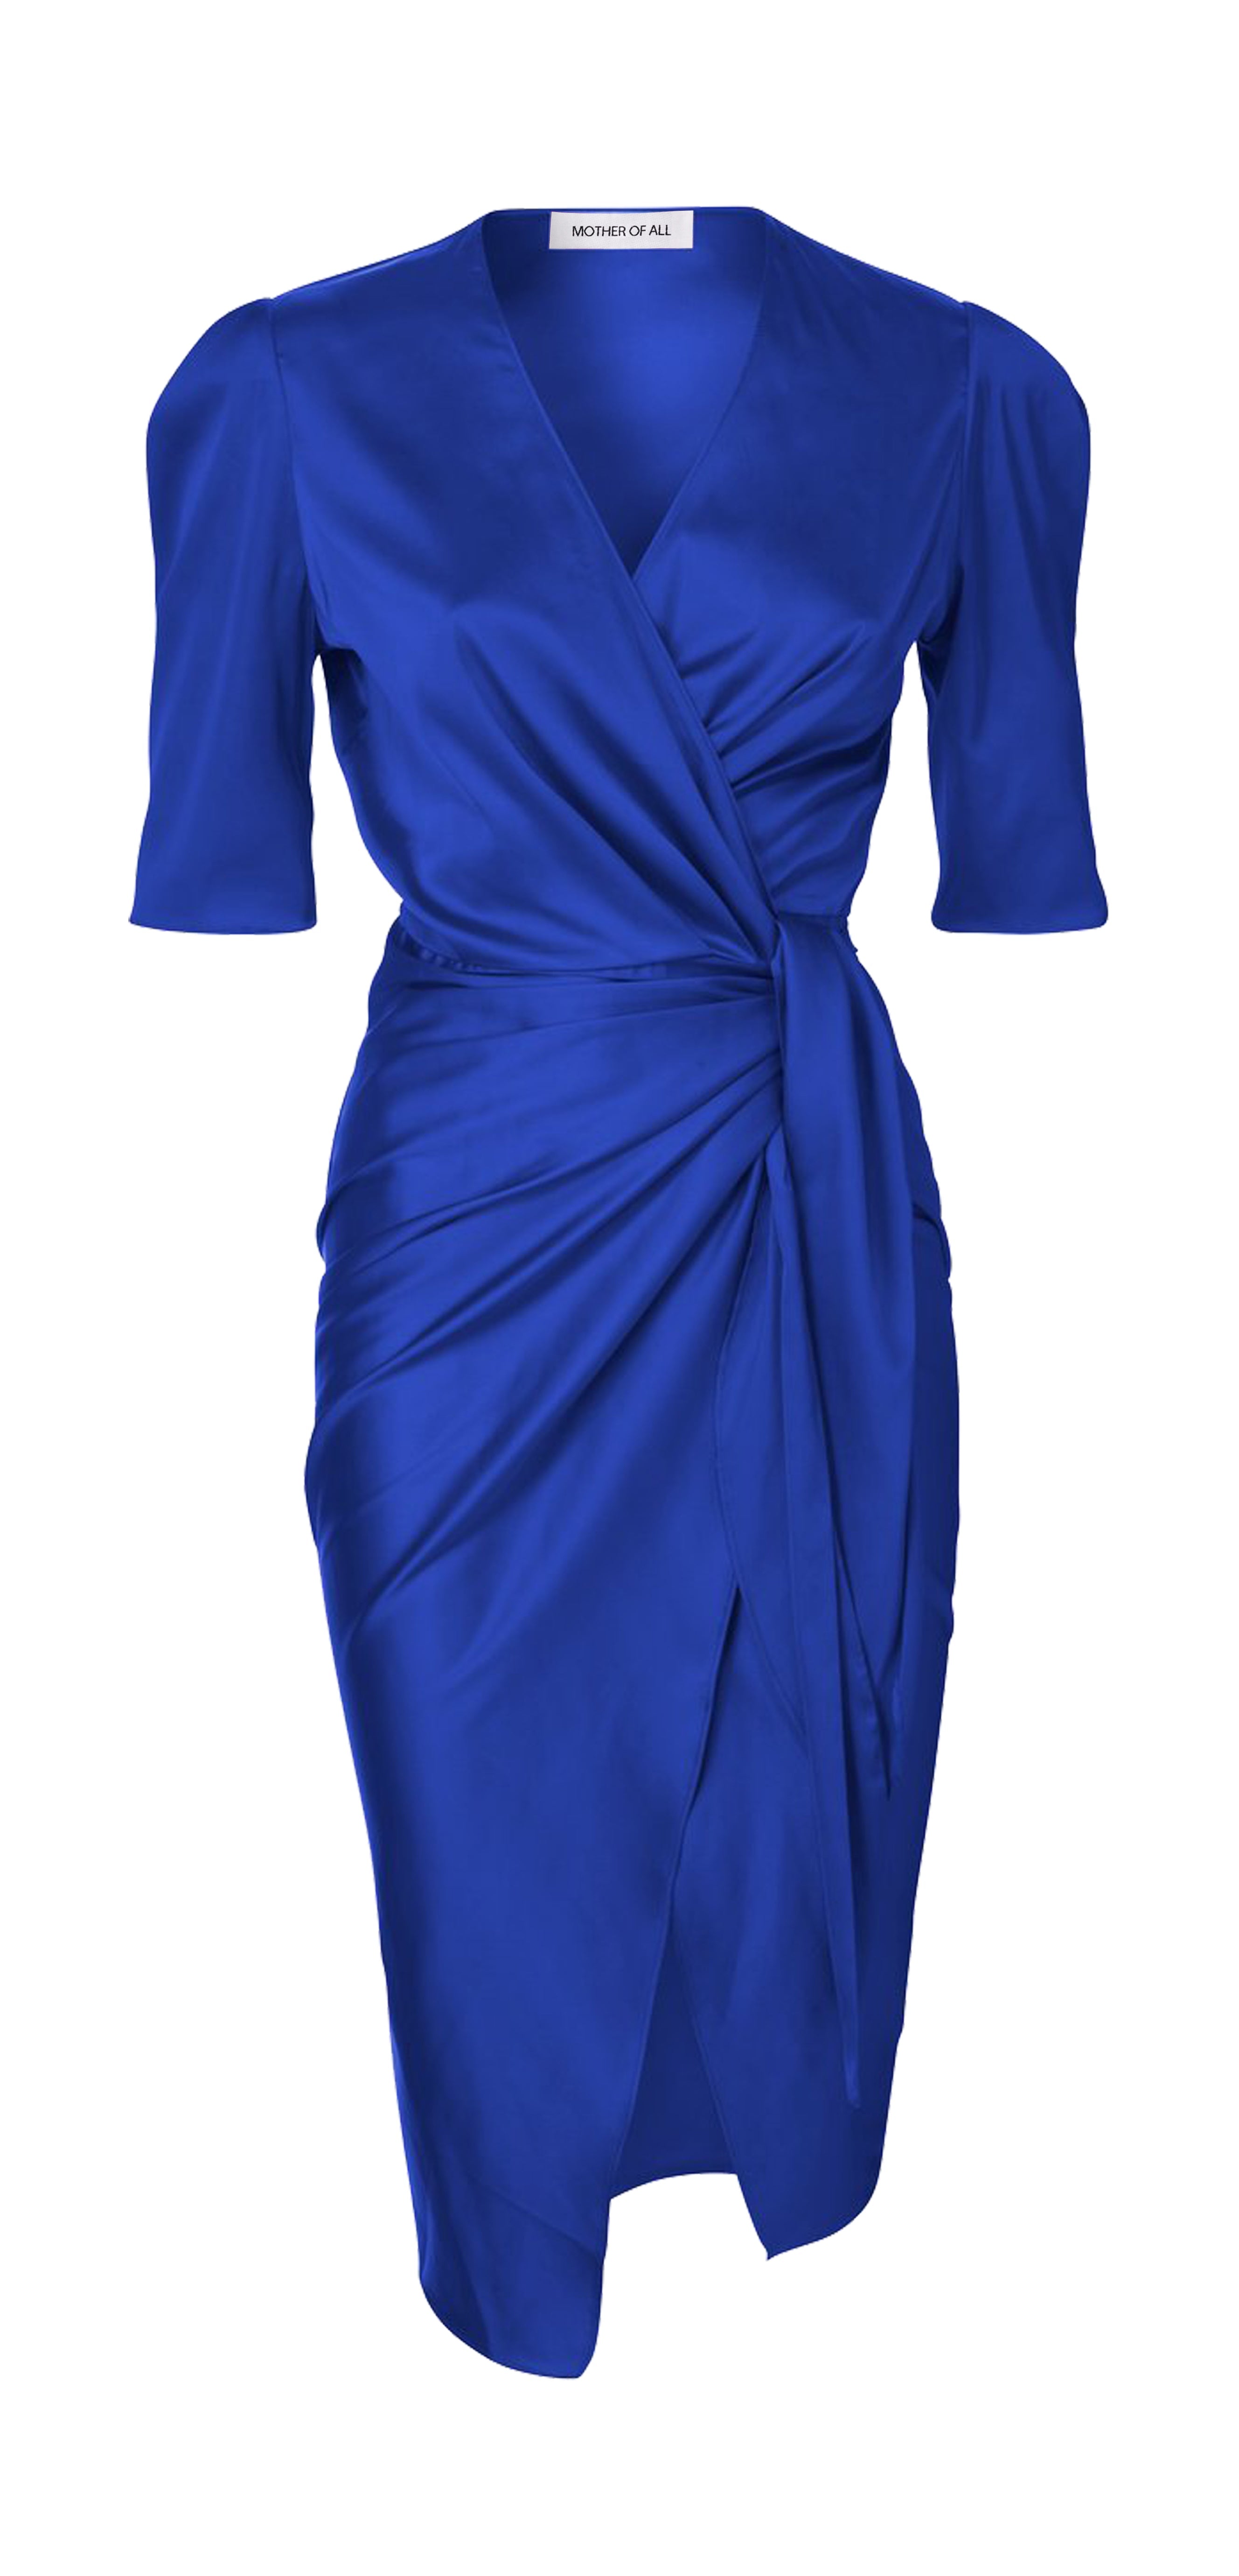 Rosie Dress - Blue